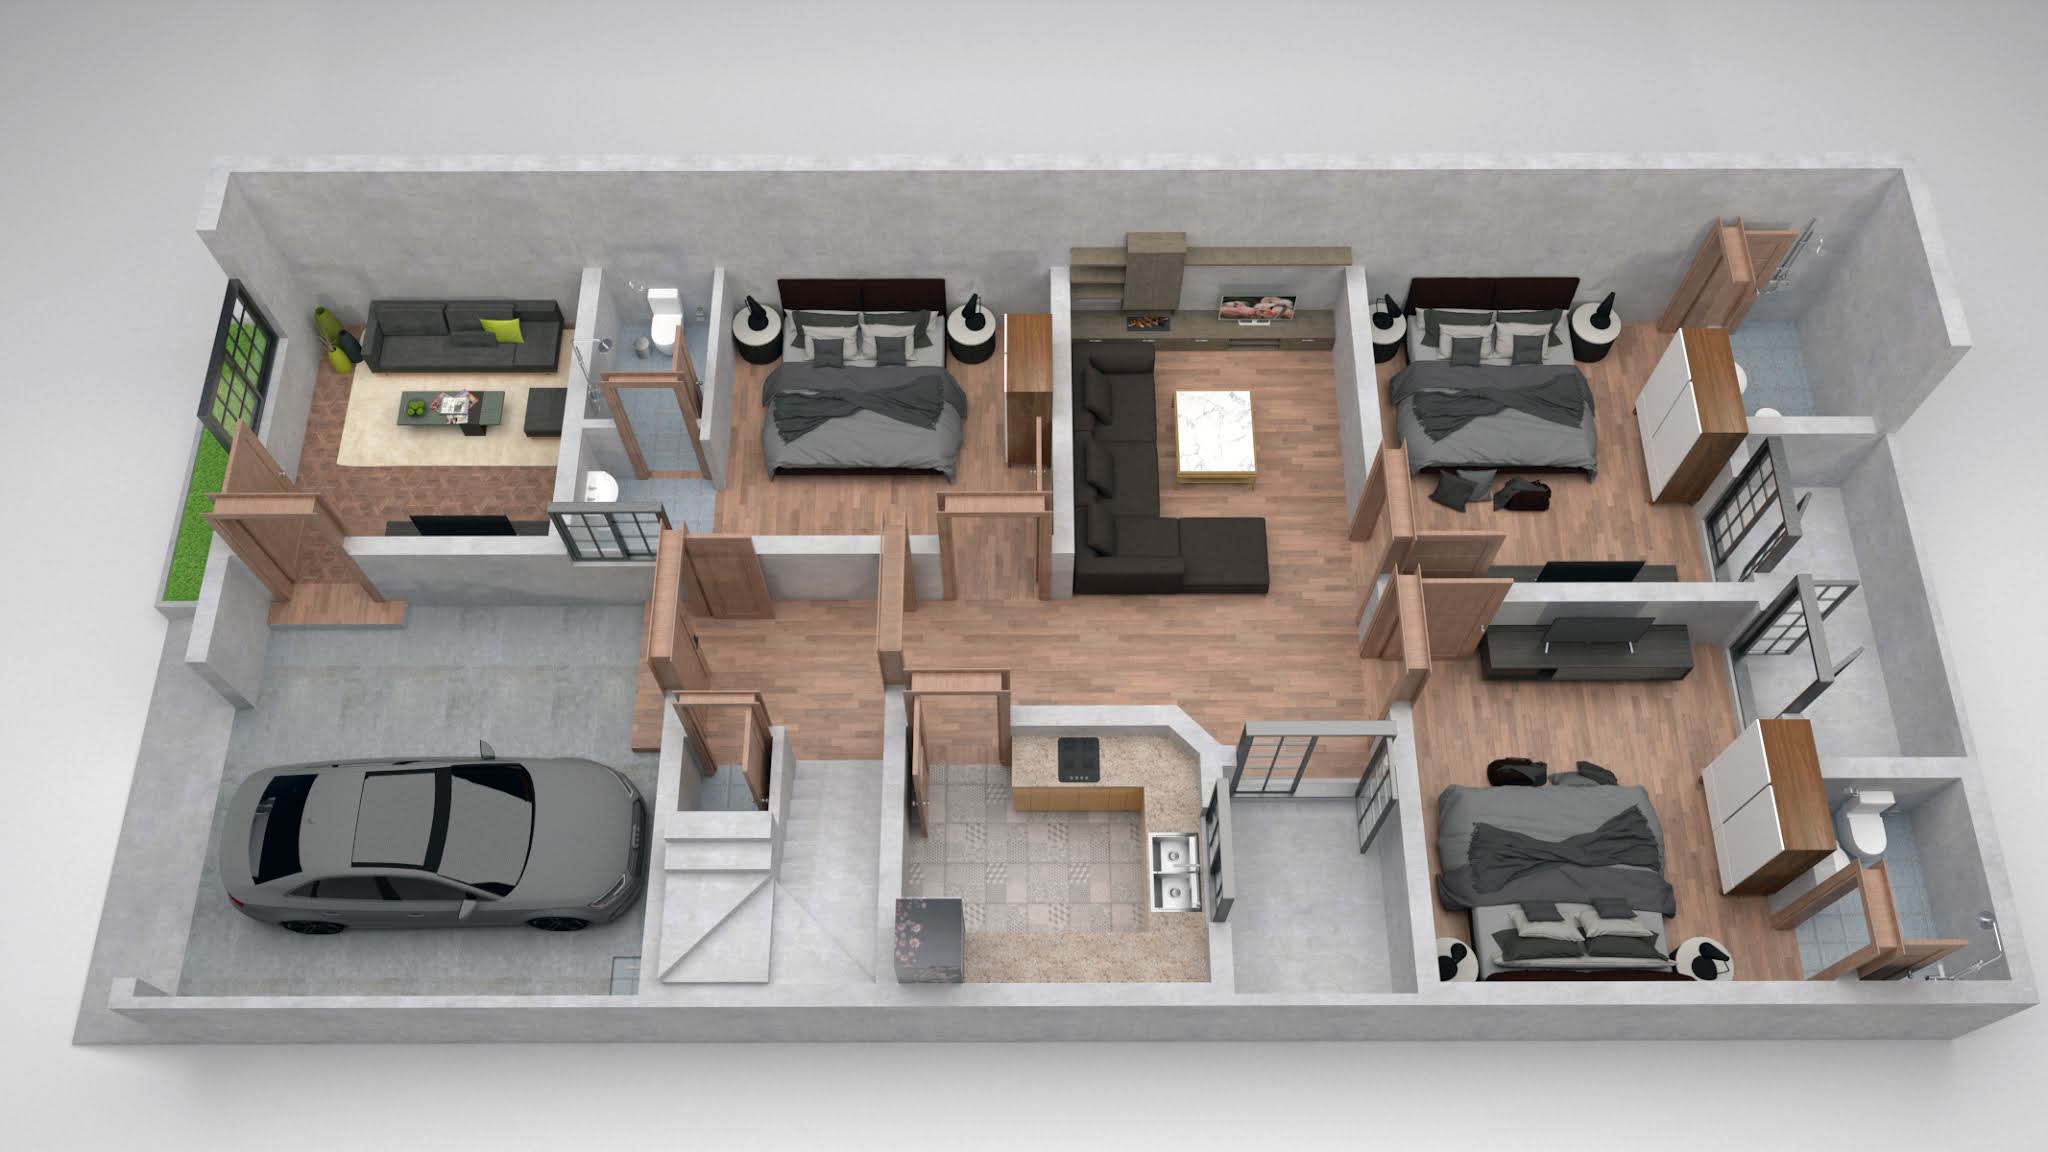 7 Marla House 3d Floor plan